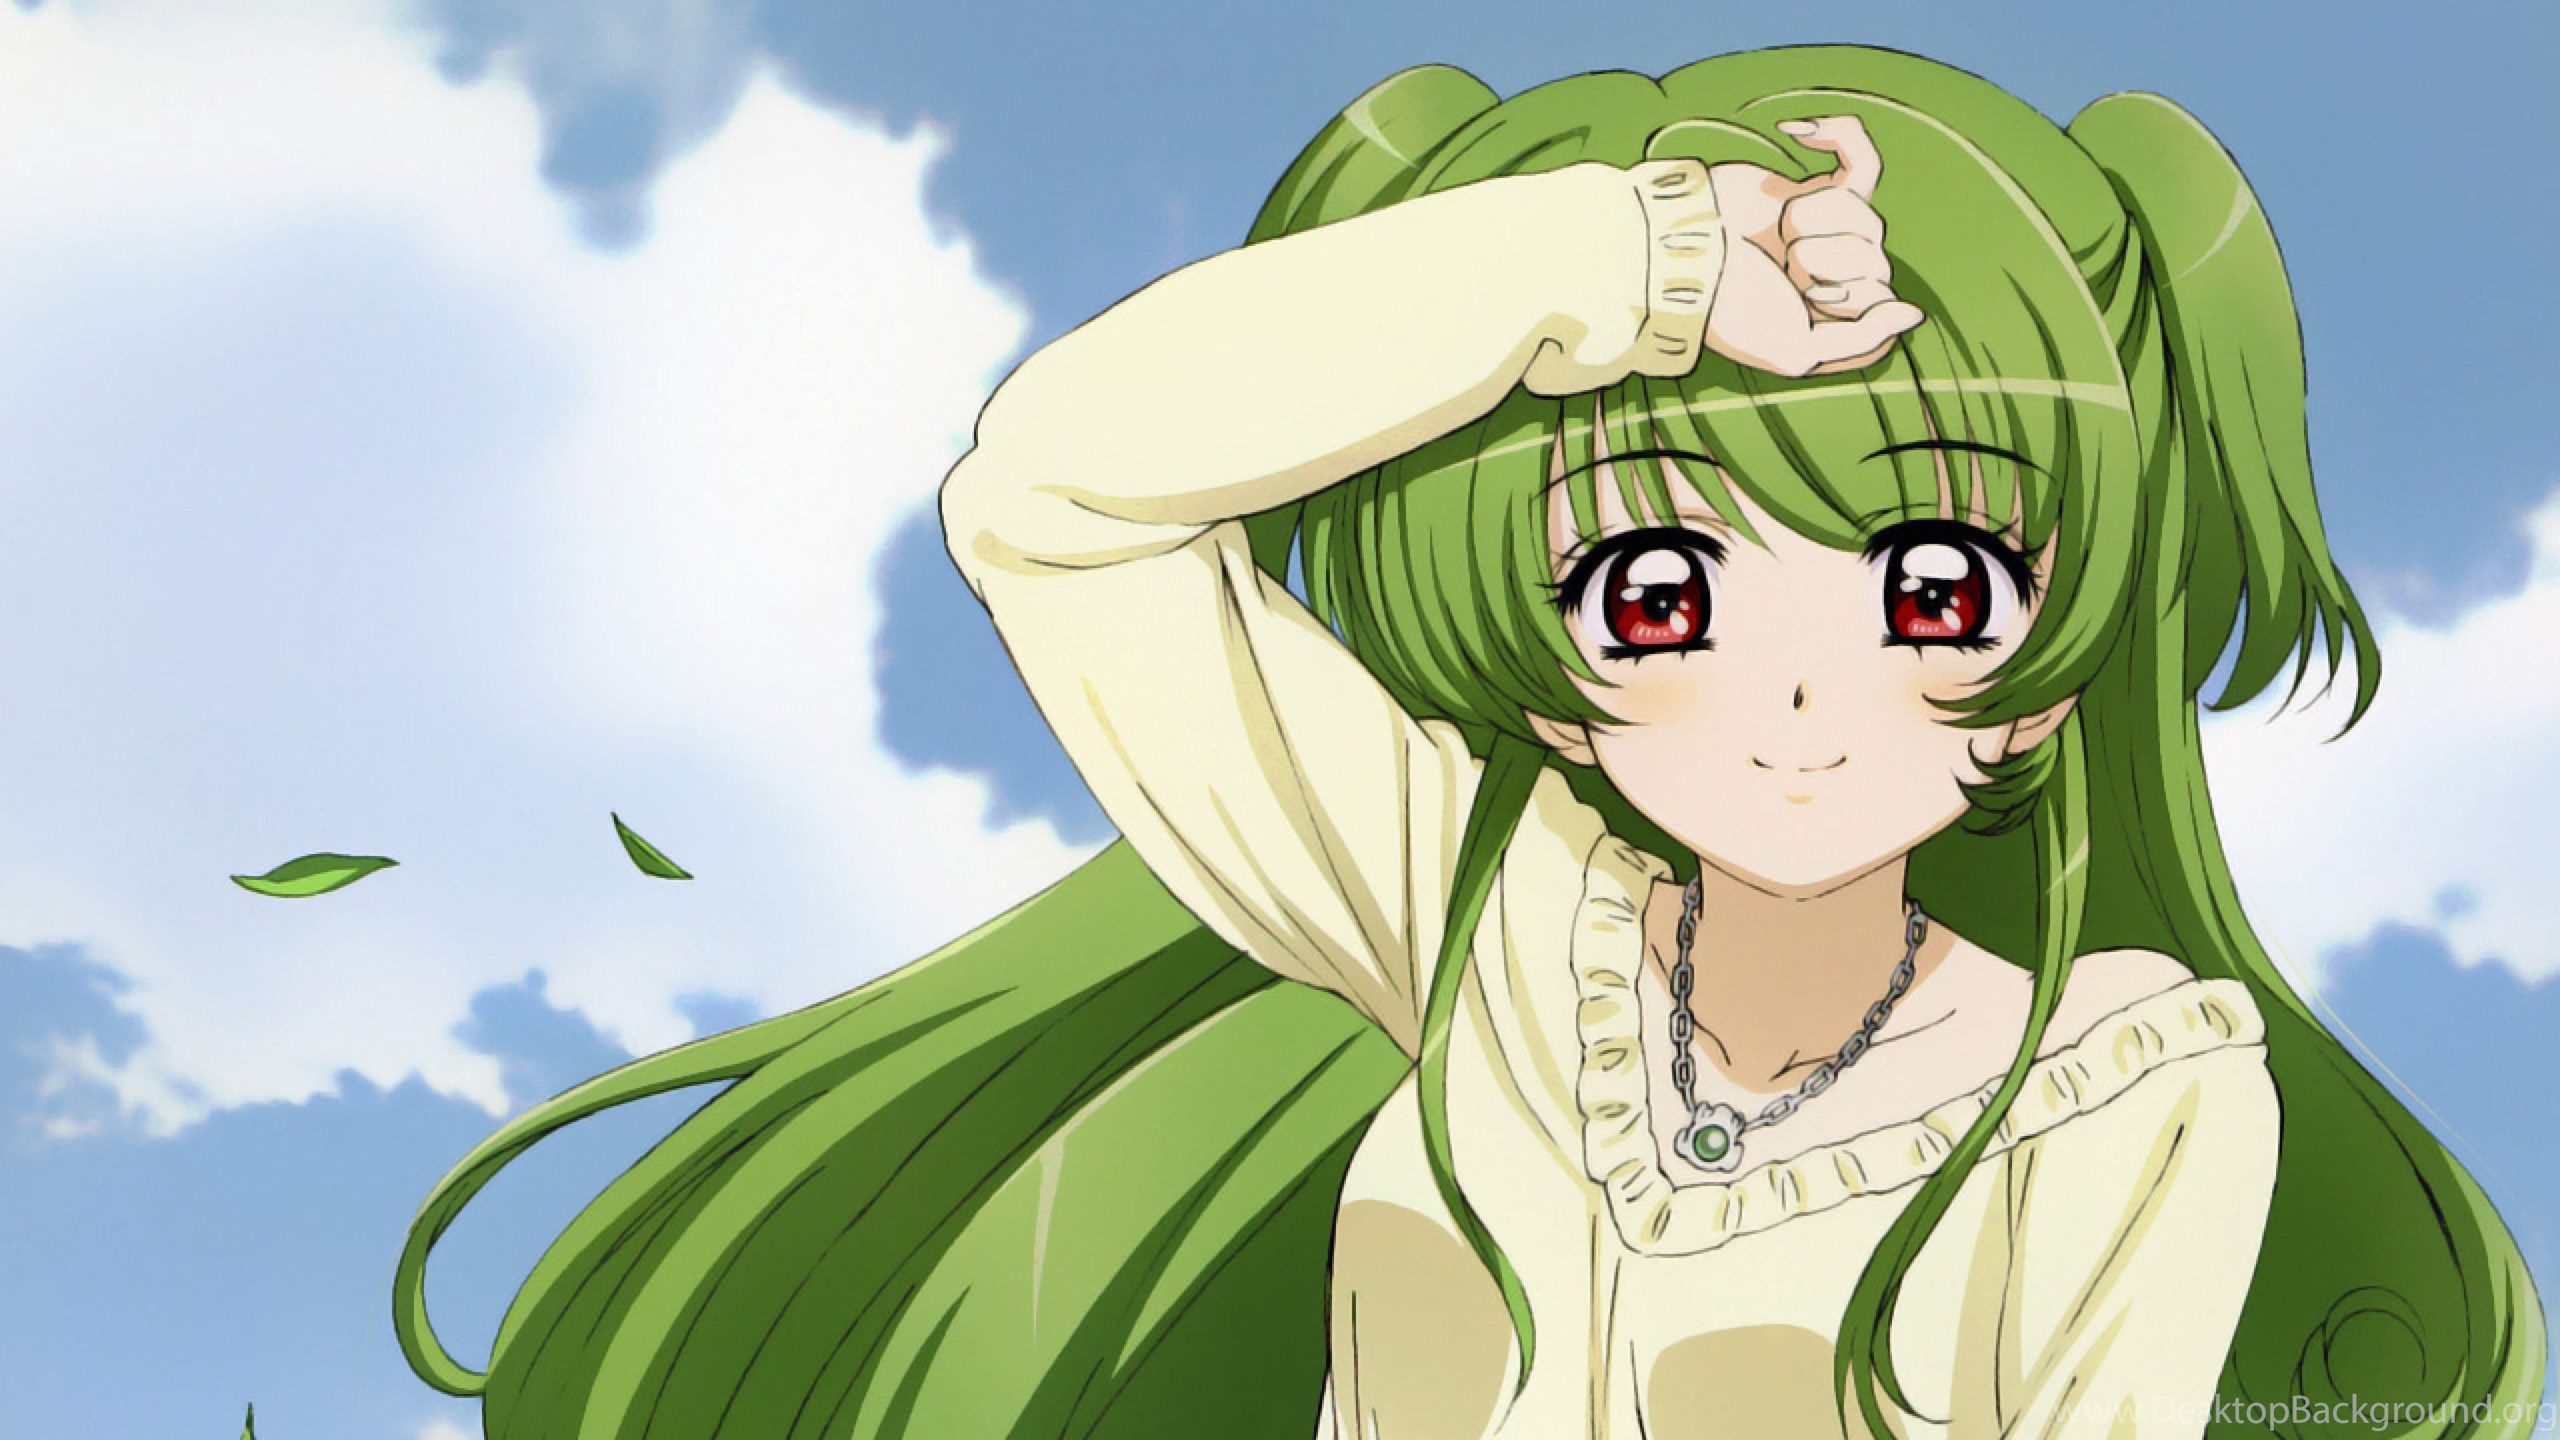 Download Wallpaper 3840x2160 Anime, Girl, Smile, Hair, Green 4K. Desktop Background